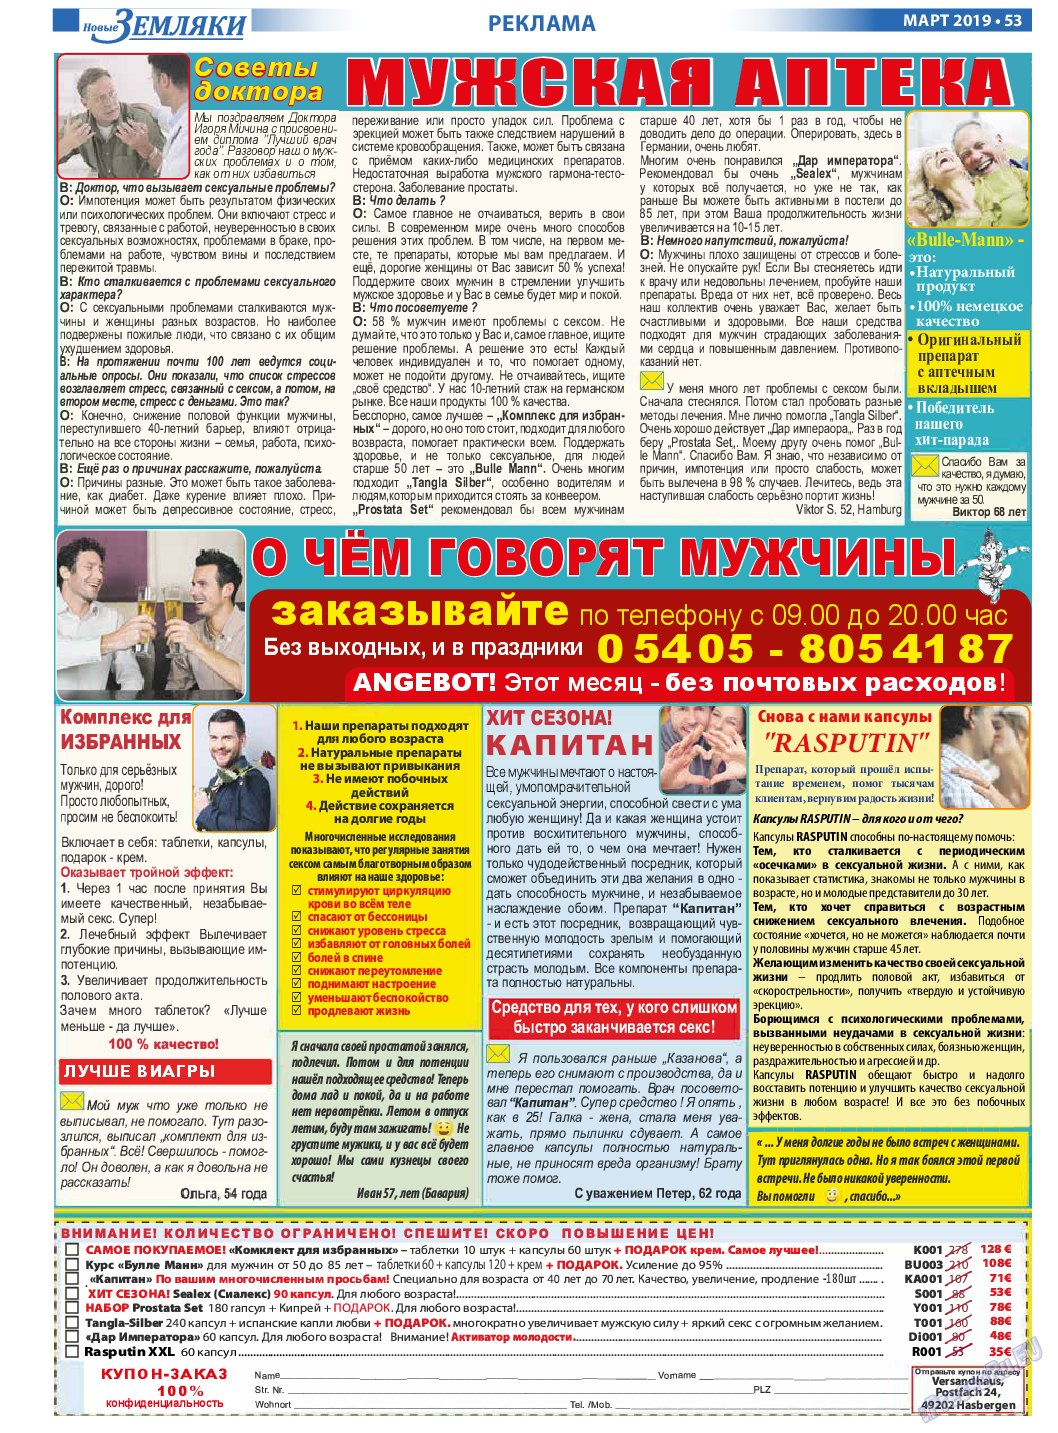 Новые Земляки, газета. 2019 №3 стр.53